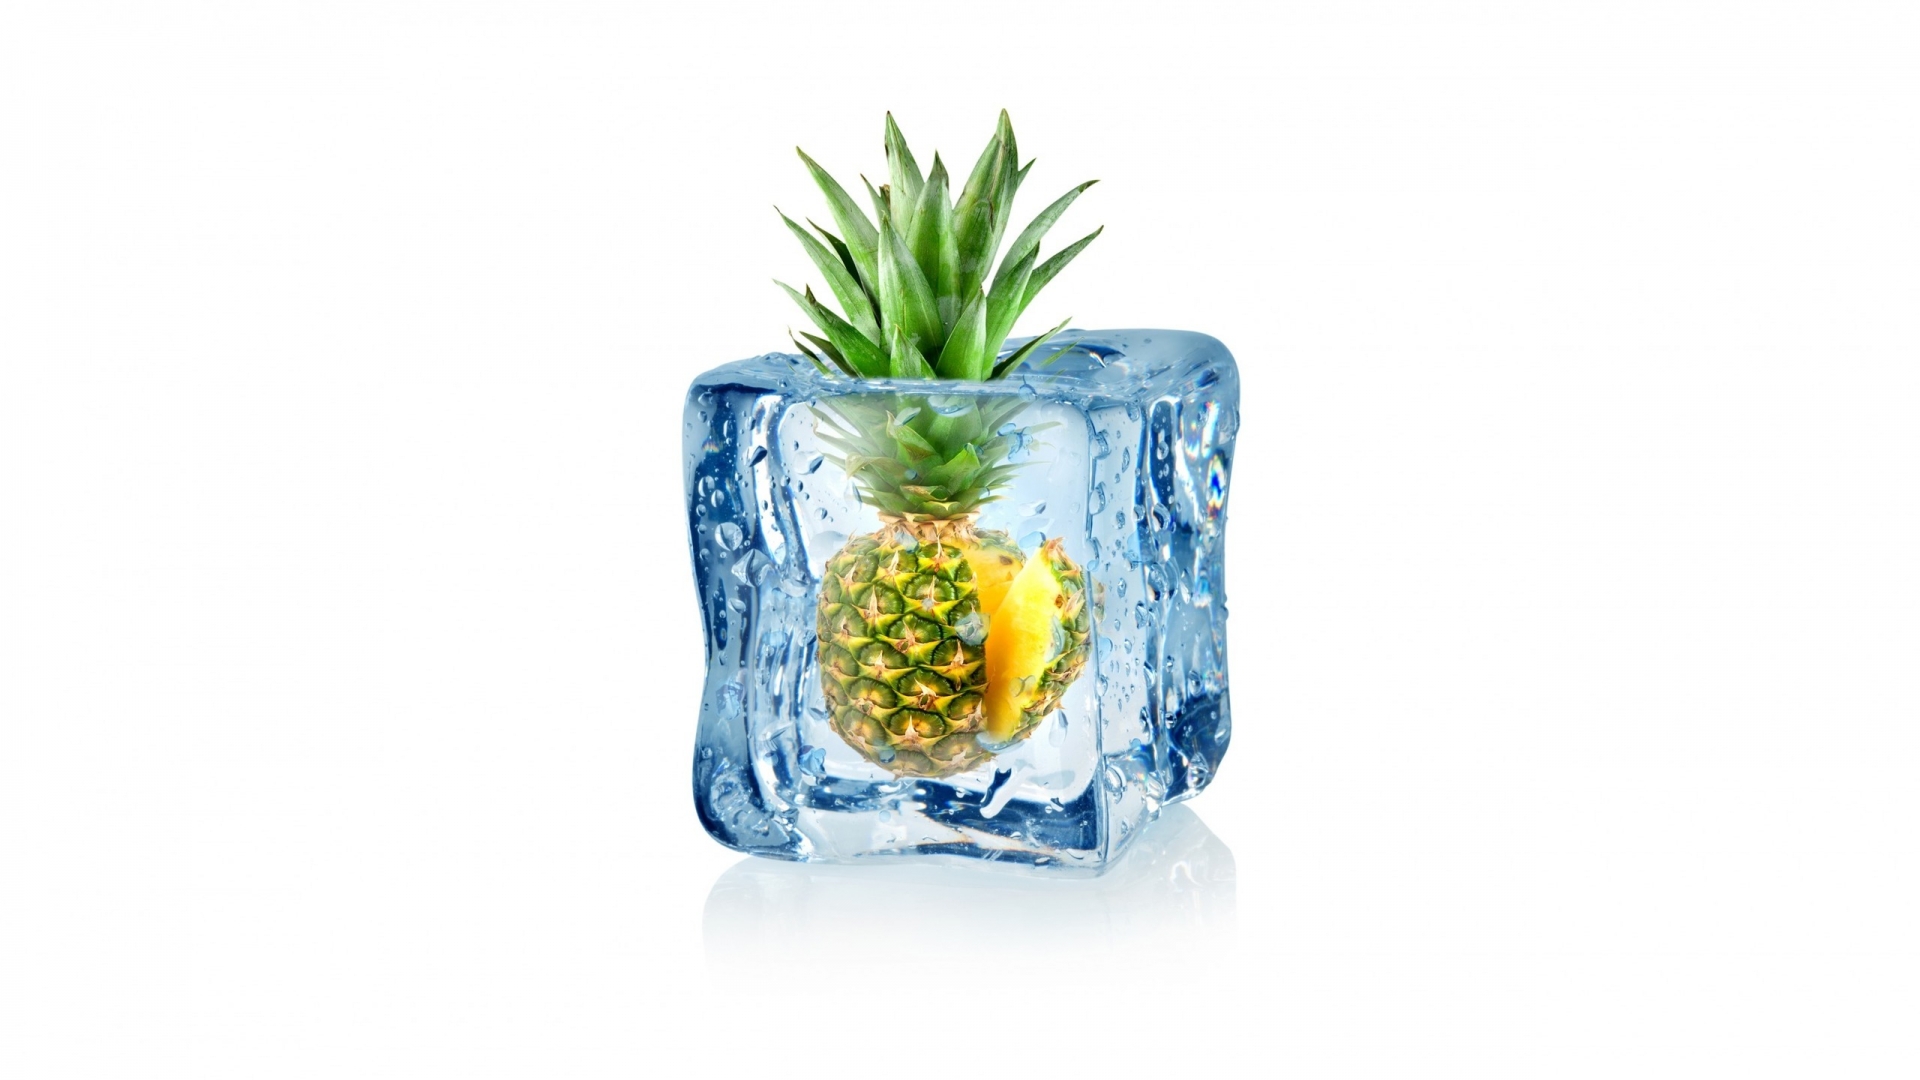 Frozen Pineapple for 1920 x 1080 HDTV 1080p resolution